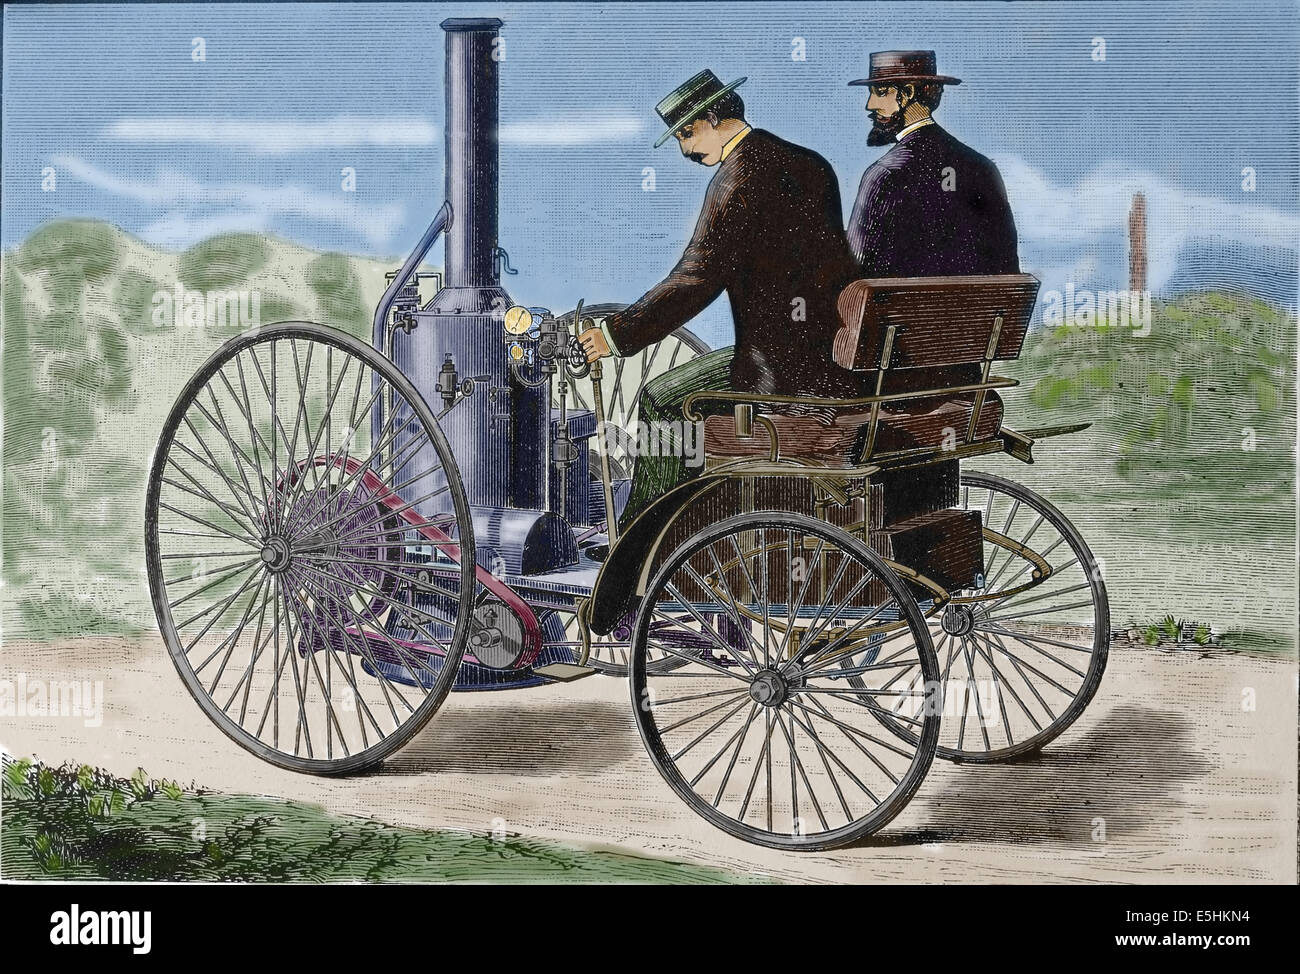 Geschichte. Zu transportieren. Altes Fahrzeug. Dampf-Automobil. Kupferstich, 19. Jahrhundert. Spätere Färbung. Stockfoto